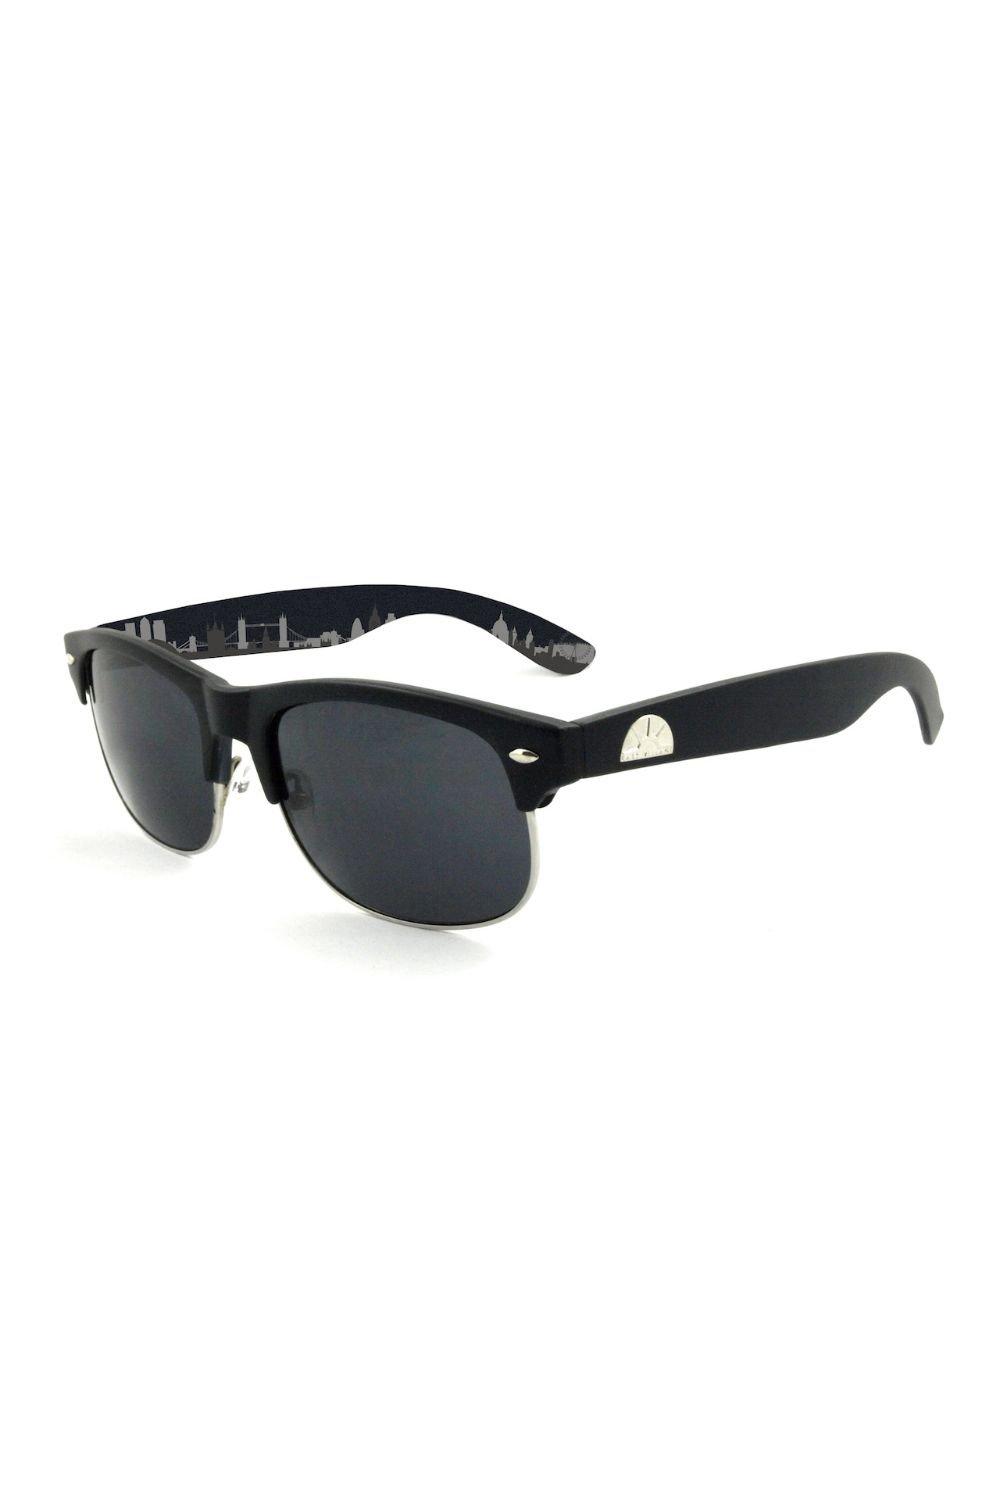 круглые солнцезащитные очки journeyman east village серебро Солнцезащитные очки Tyson в стиле ретро East Village, черный